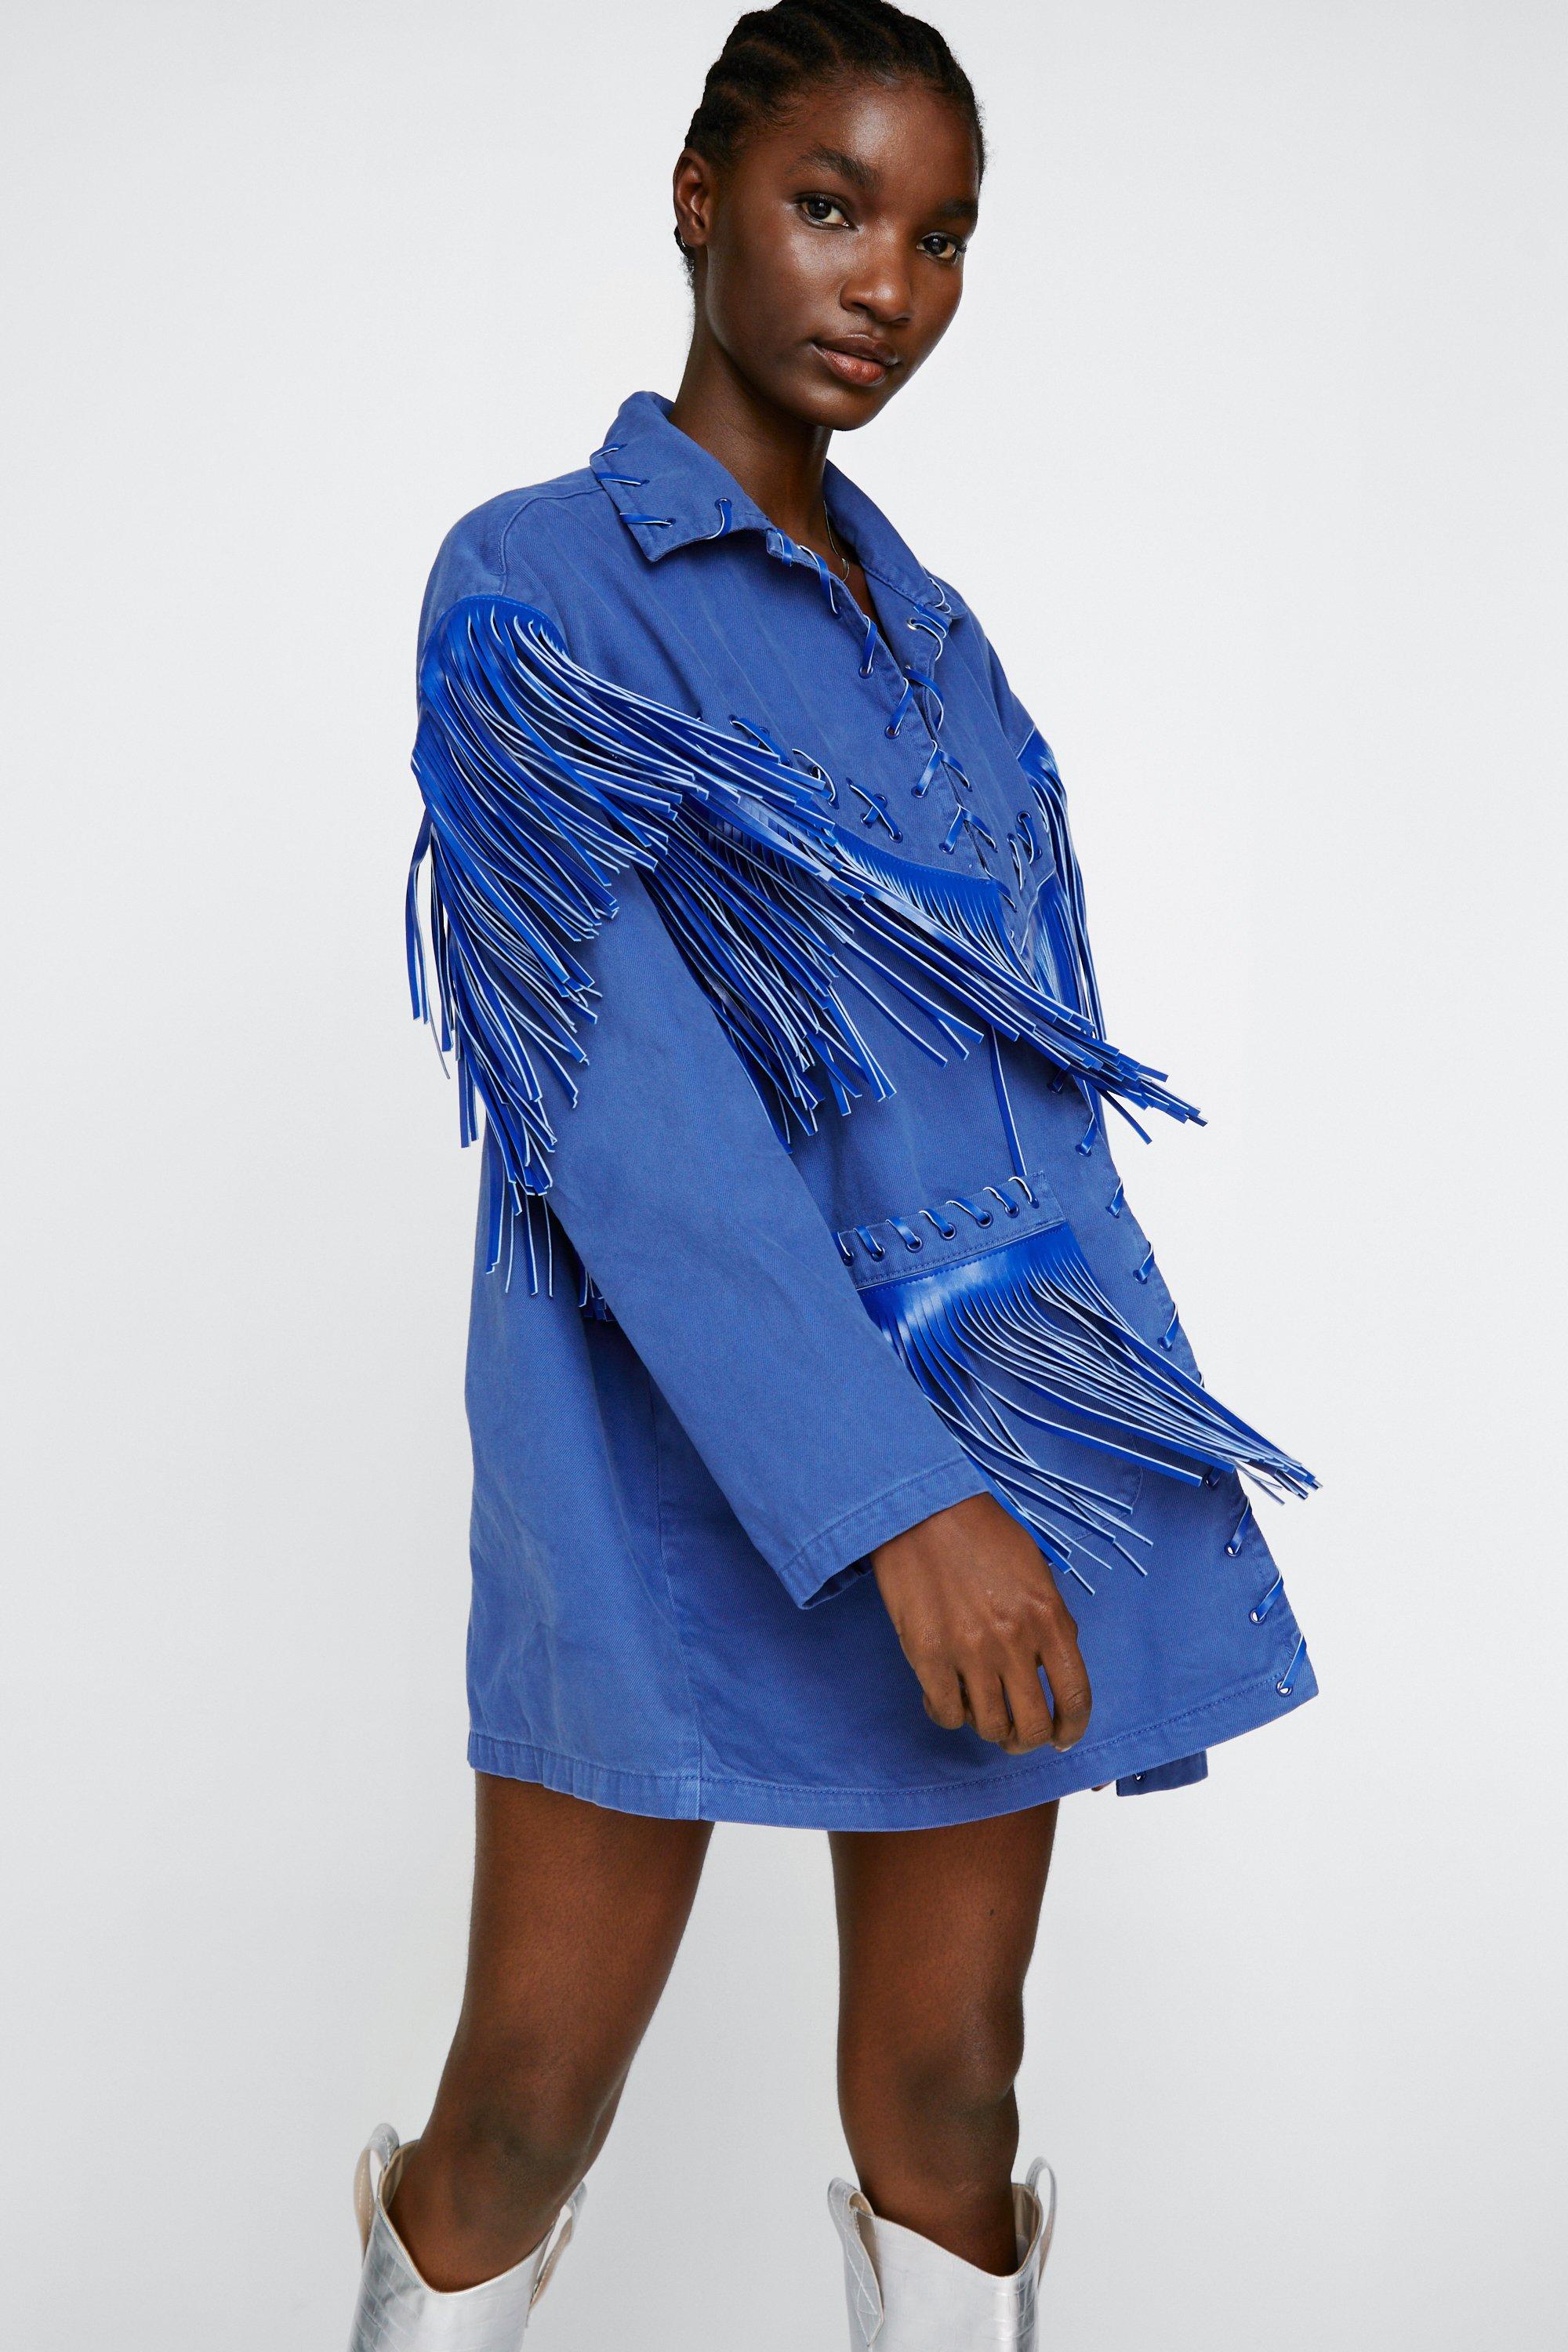 Buy Cobalt Blue Jacket for men Online from Indian Designers 2024